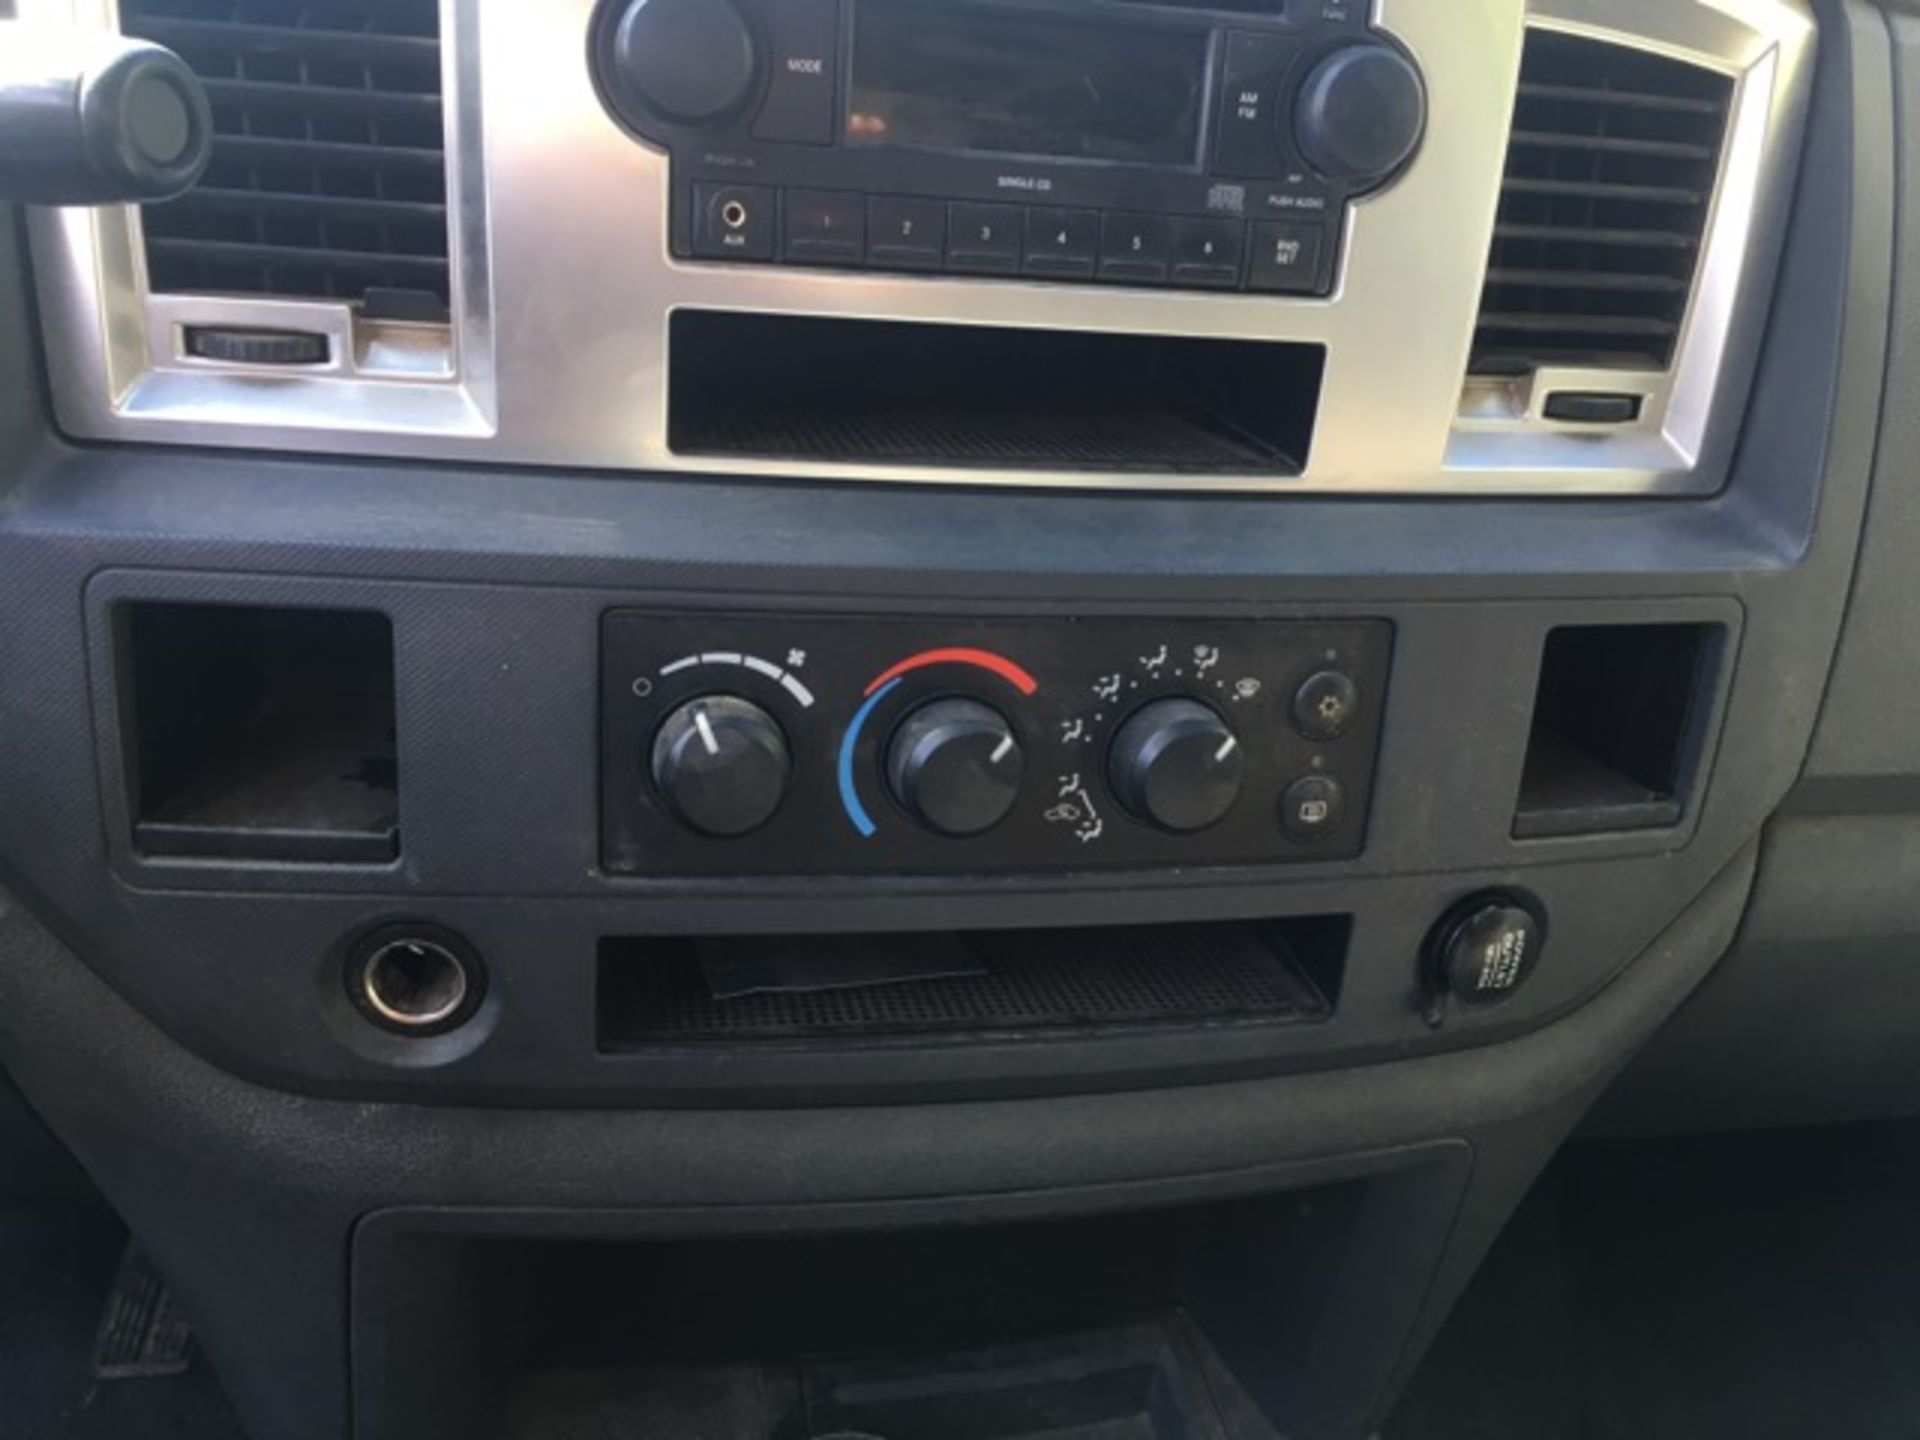 2007 Dodge Ram 1500 4 Dr Mega Cab, Hemi 5.7L V8, AM/FM CD, Tint, Cruise, PDL, PW, PM, Running - Bild 12 aus 24